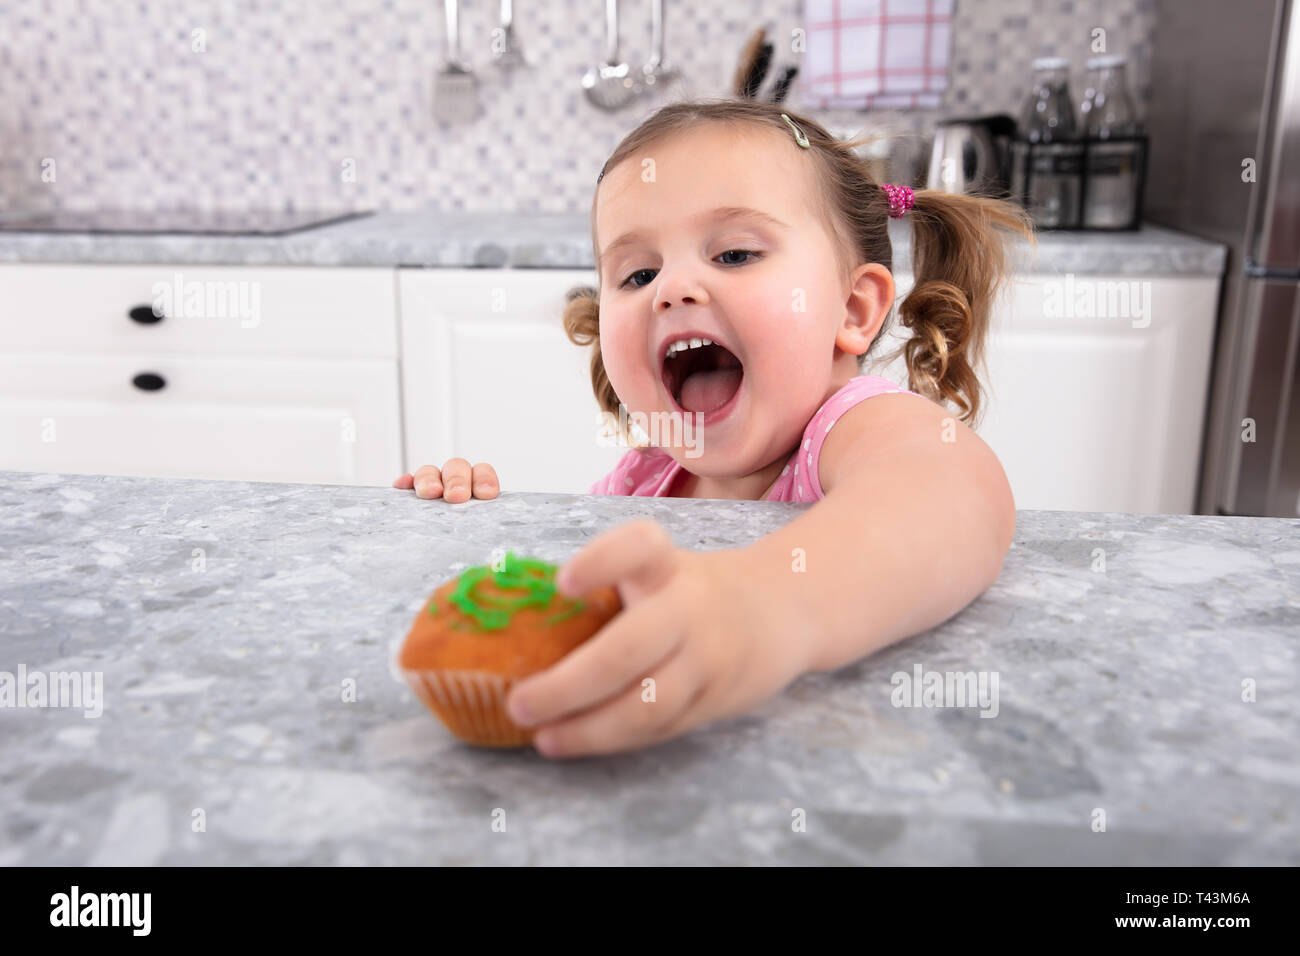 Smiling cute girl's Hand Reaching For Cupcake sur compteur de cuisine Banque D'Images